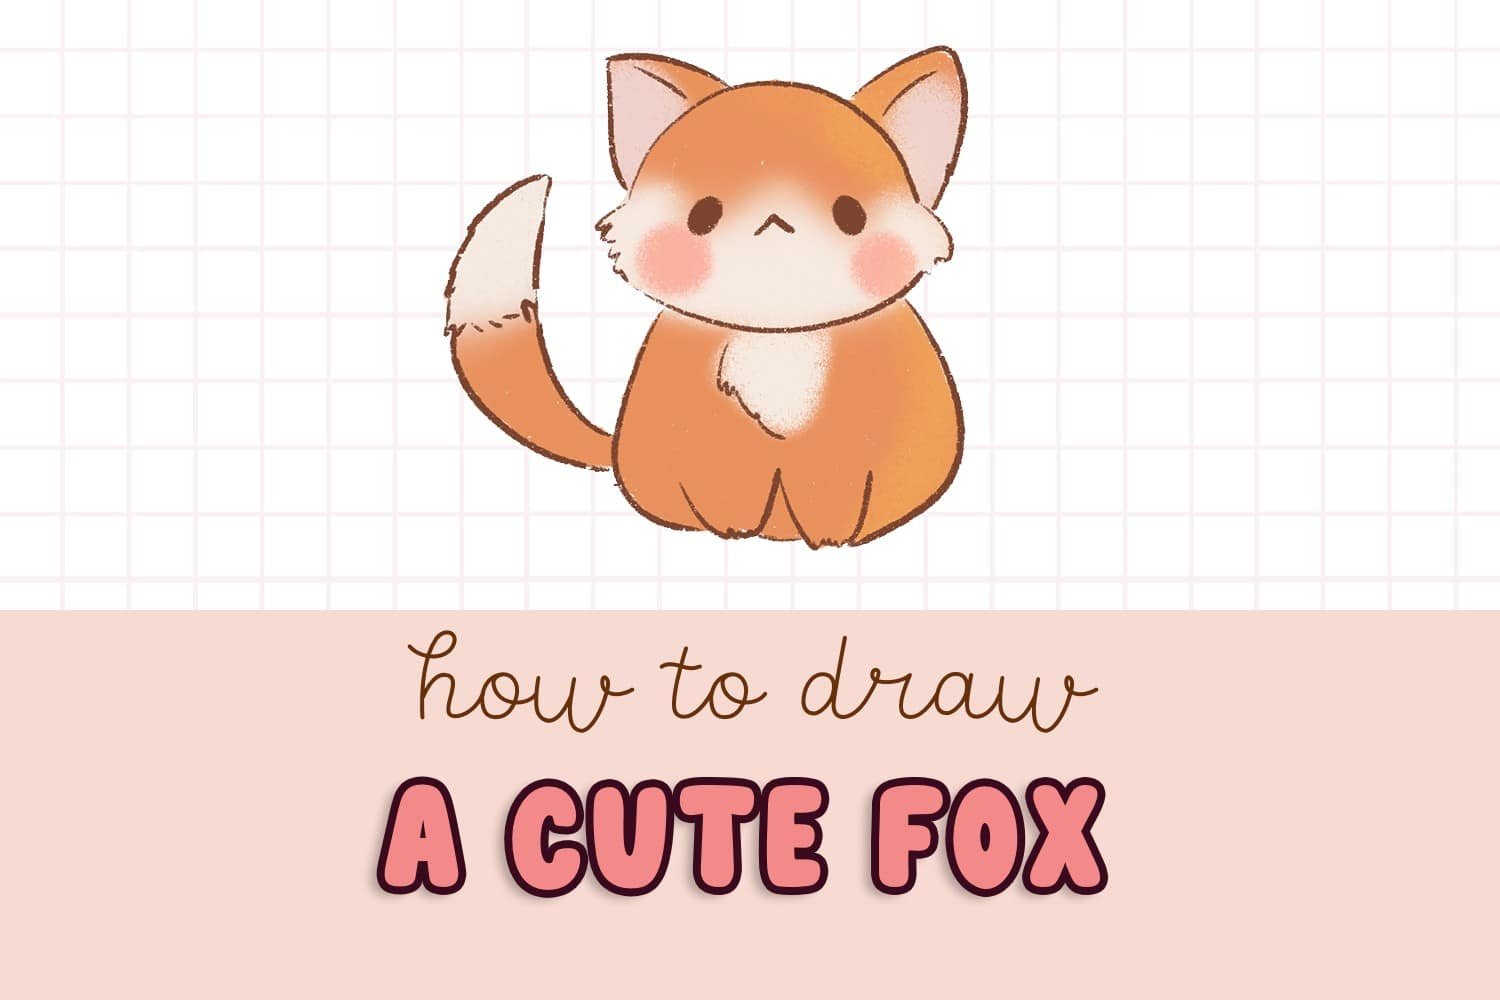 Pencil drawings - Cute and easy drawings - Easy drawings easy